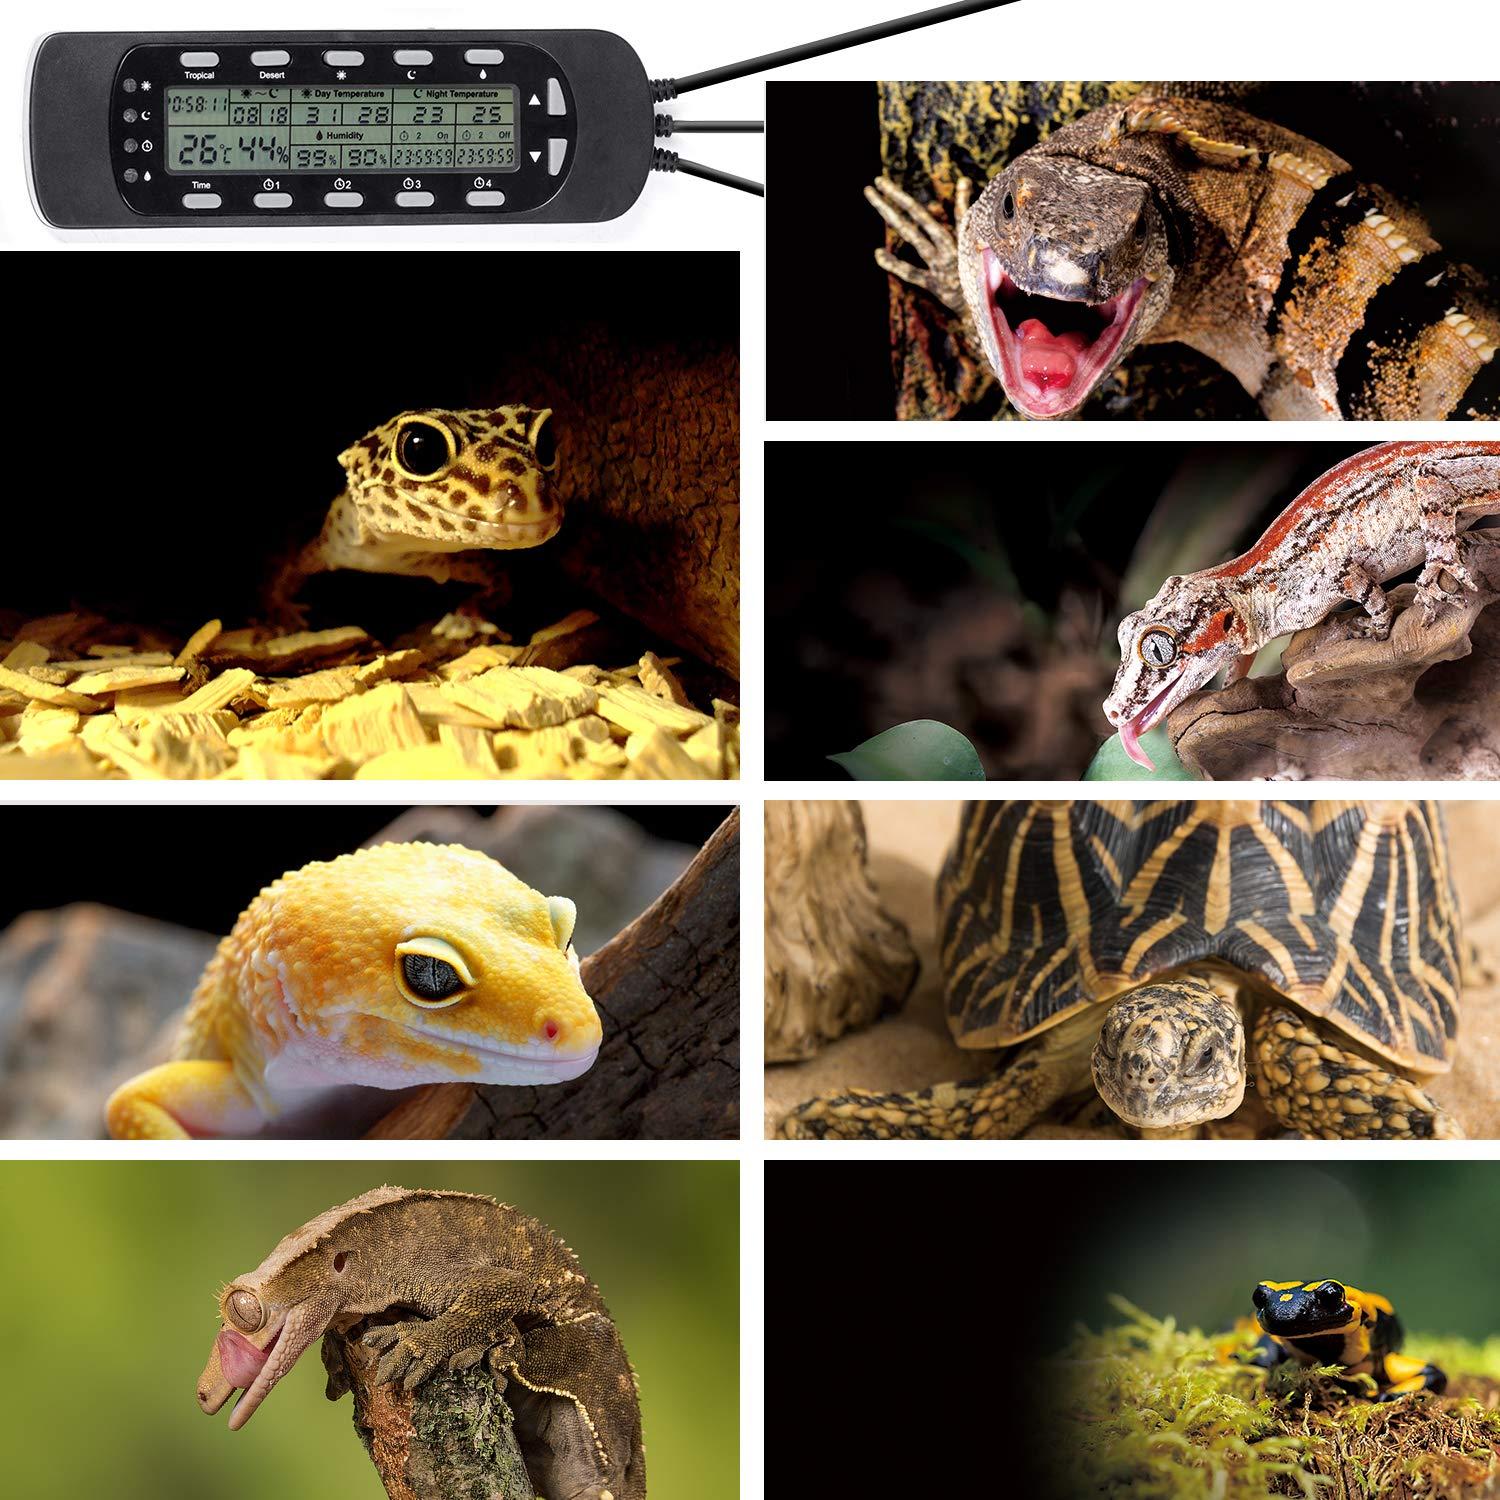 GXSTWU Reptile Hygrometer Thermometer LCD Display Digital Reptile